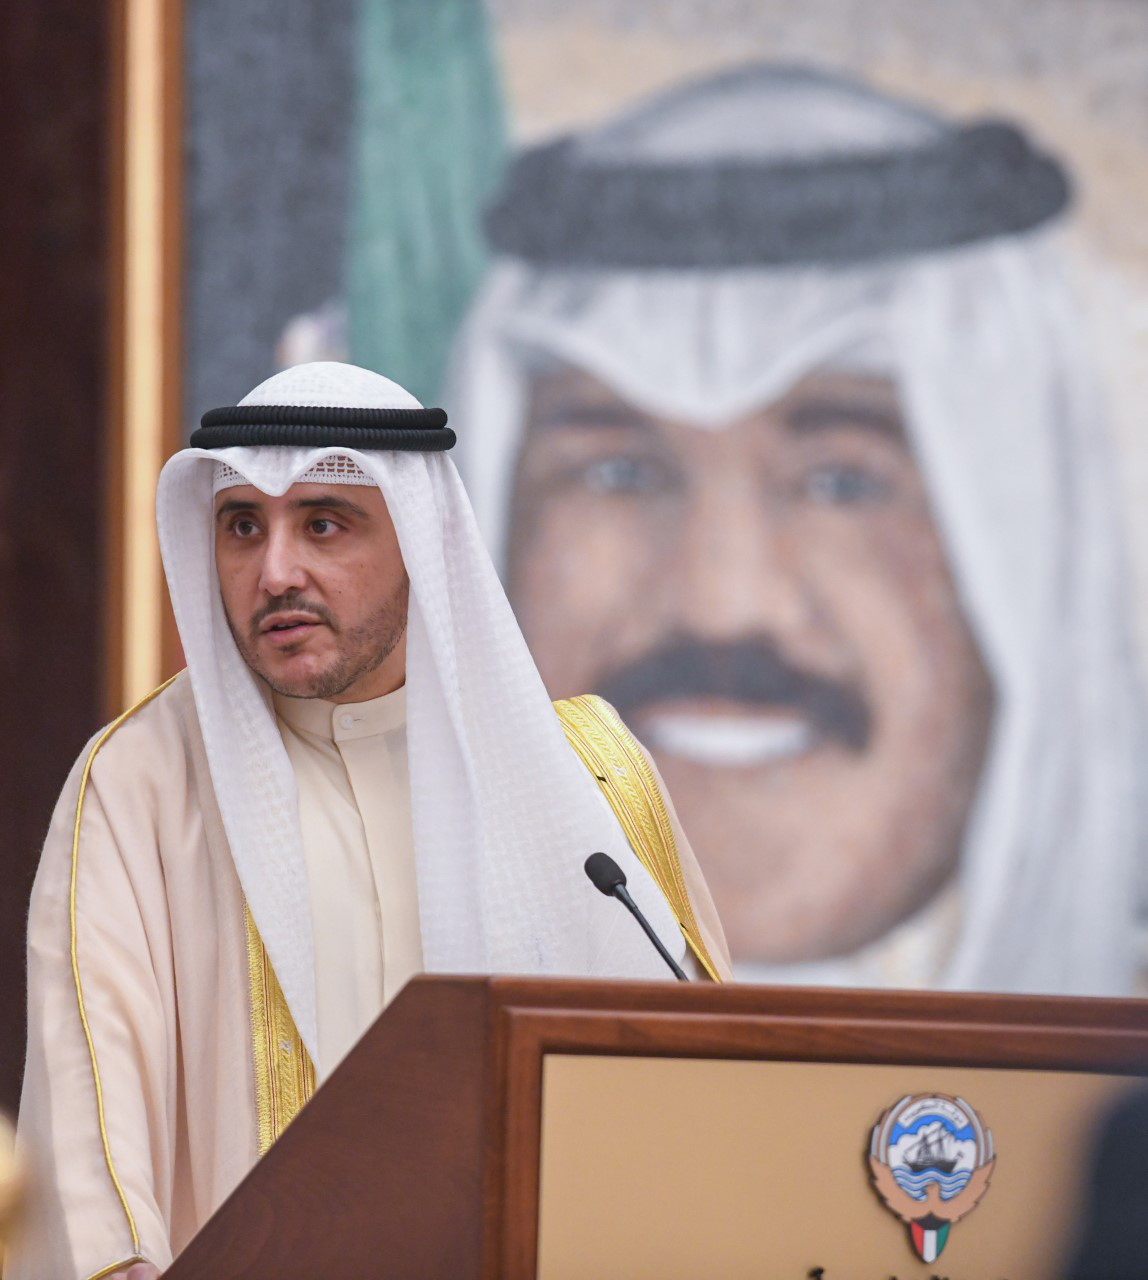 وزير الخارجية : الرؤى بين الكويت والولايات المتحدة متوافقة ومتطابقة بالنسبة للقضايا الإقليمية والدولية